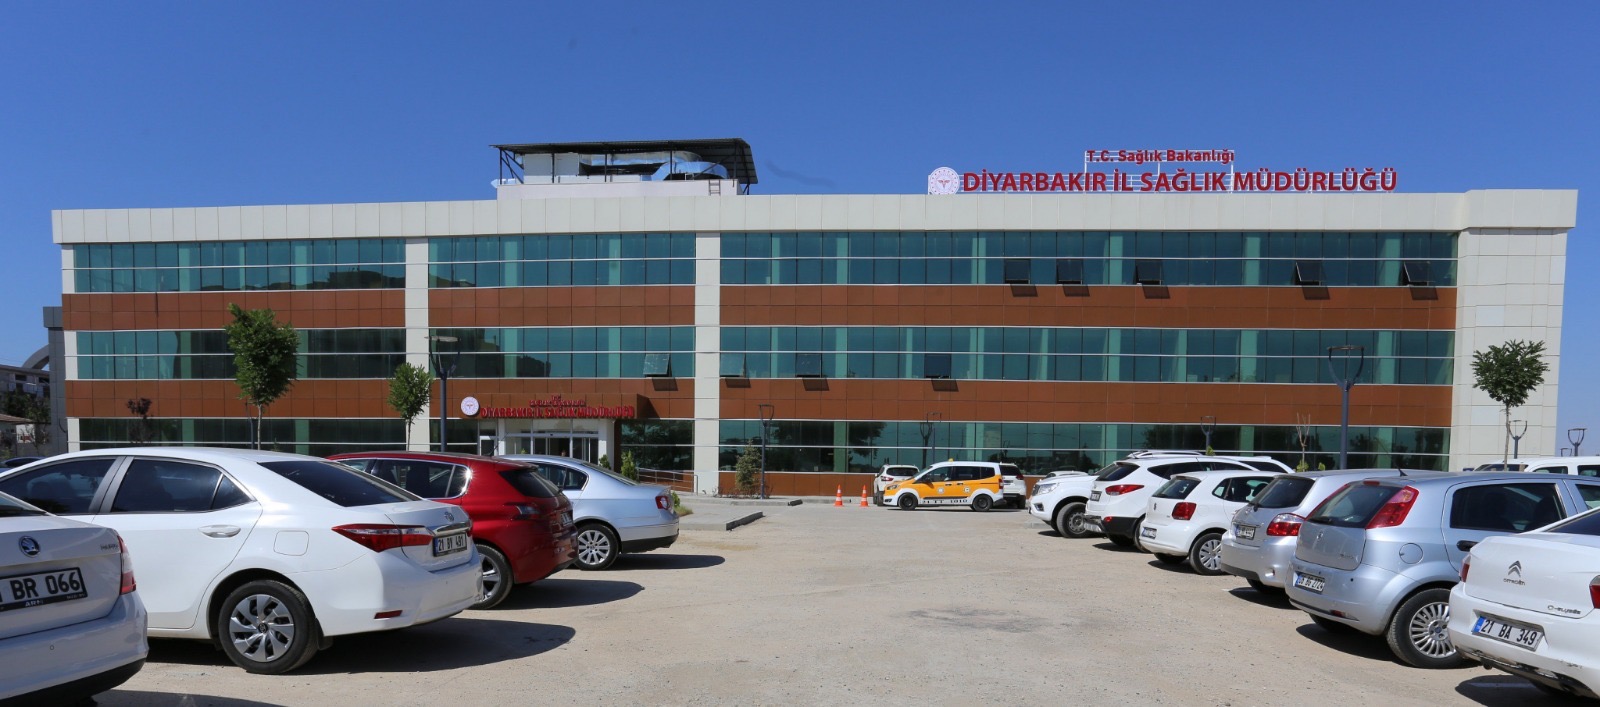 Diyarbakır sağlık müdürlüğünden 2 haberimiz için açıklama